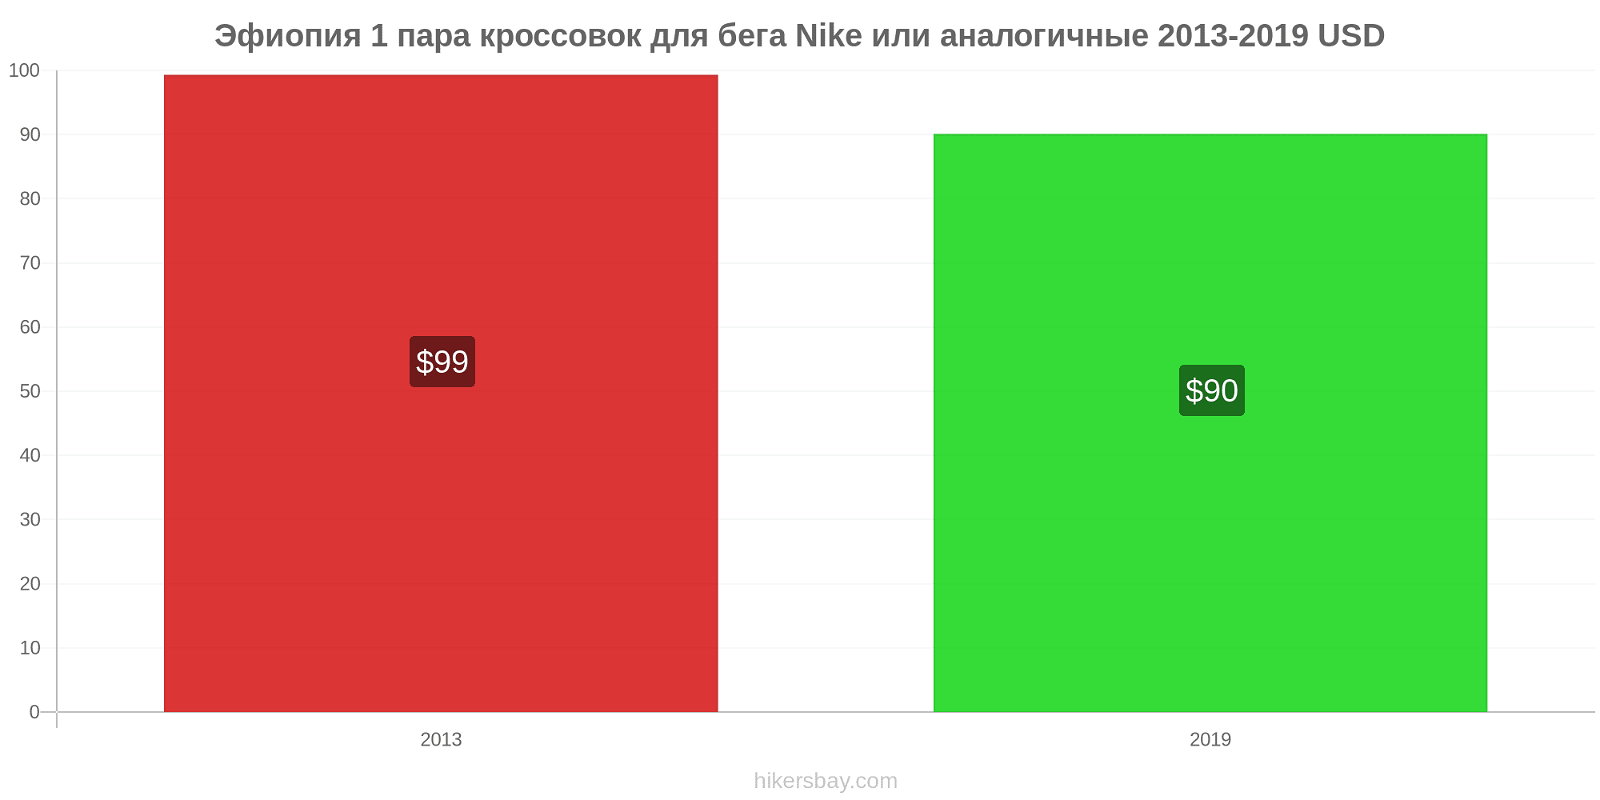 Эфиопия изменения цен 1 пара кроссовок для бега Nike или аналогичные hikersbay.com